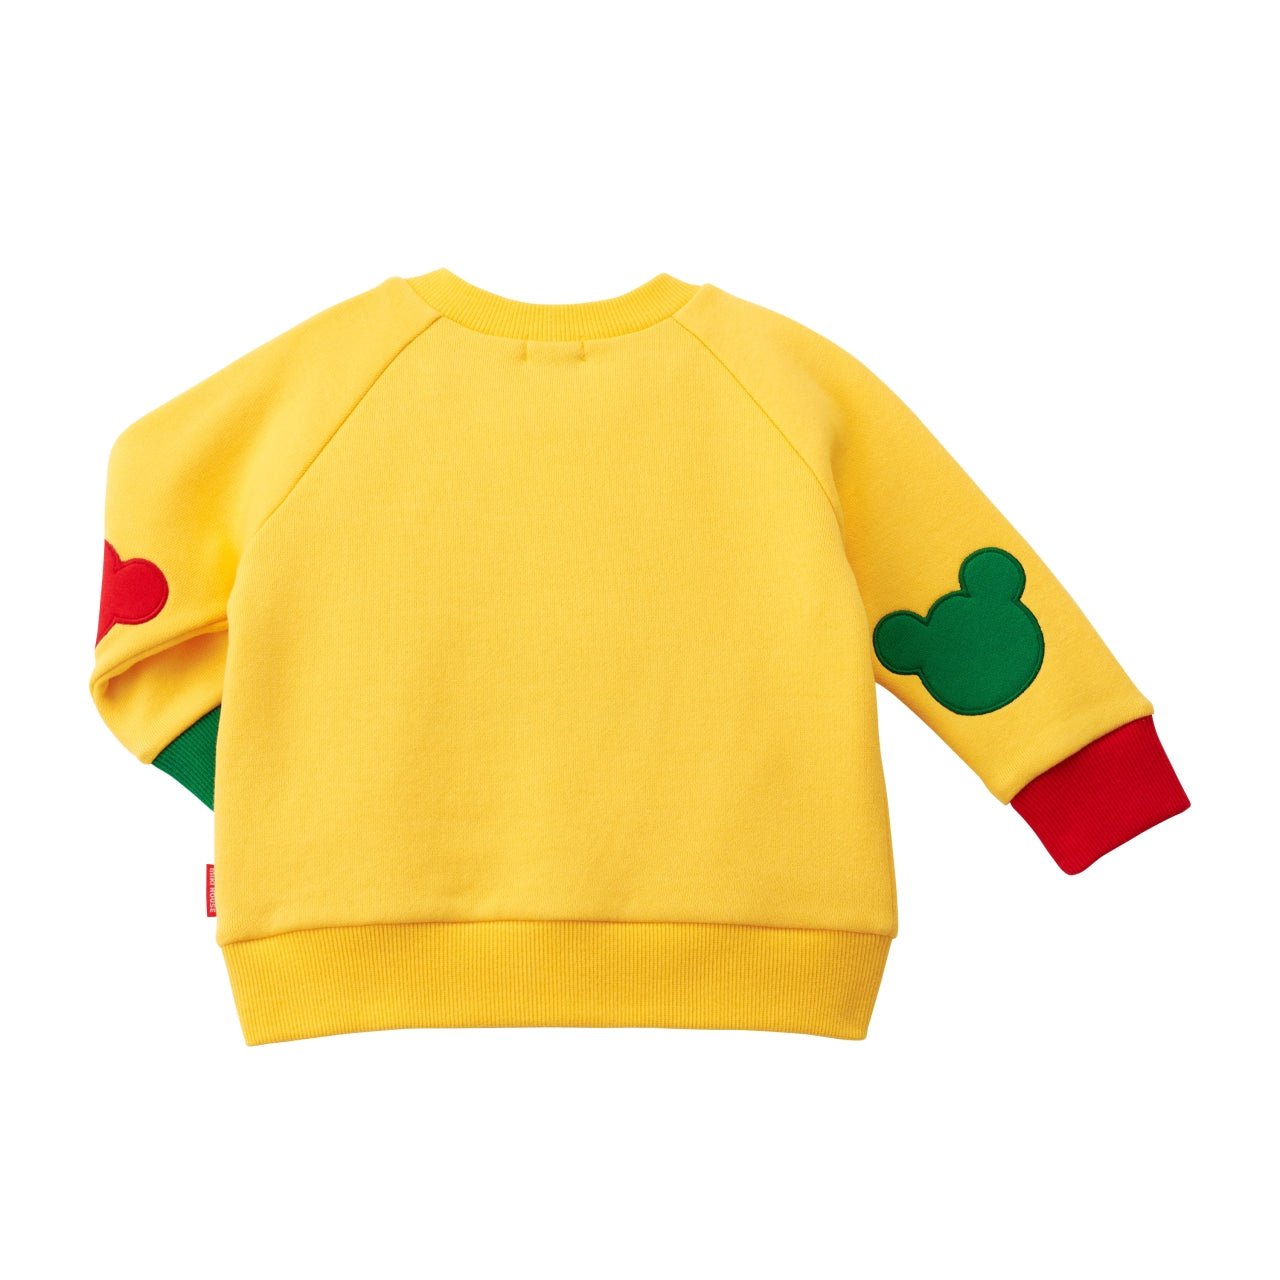 Pucci-licious Sweatshirt - 10-5610-579-04-80